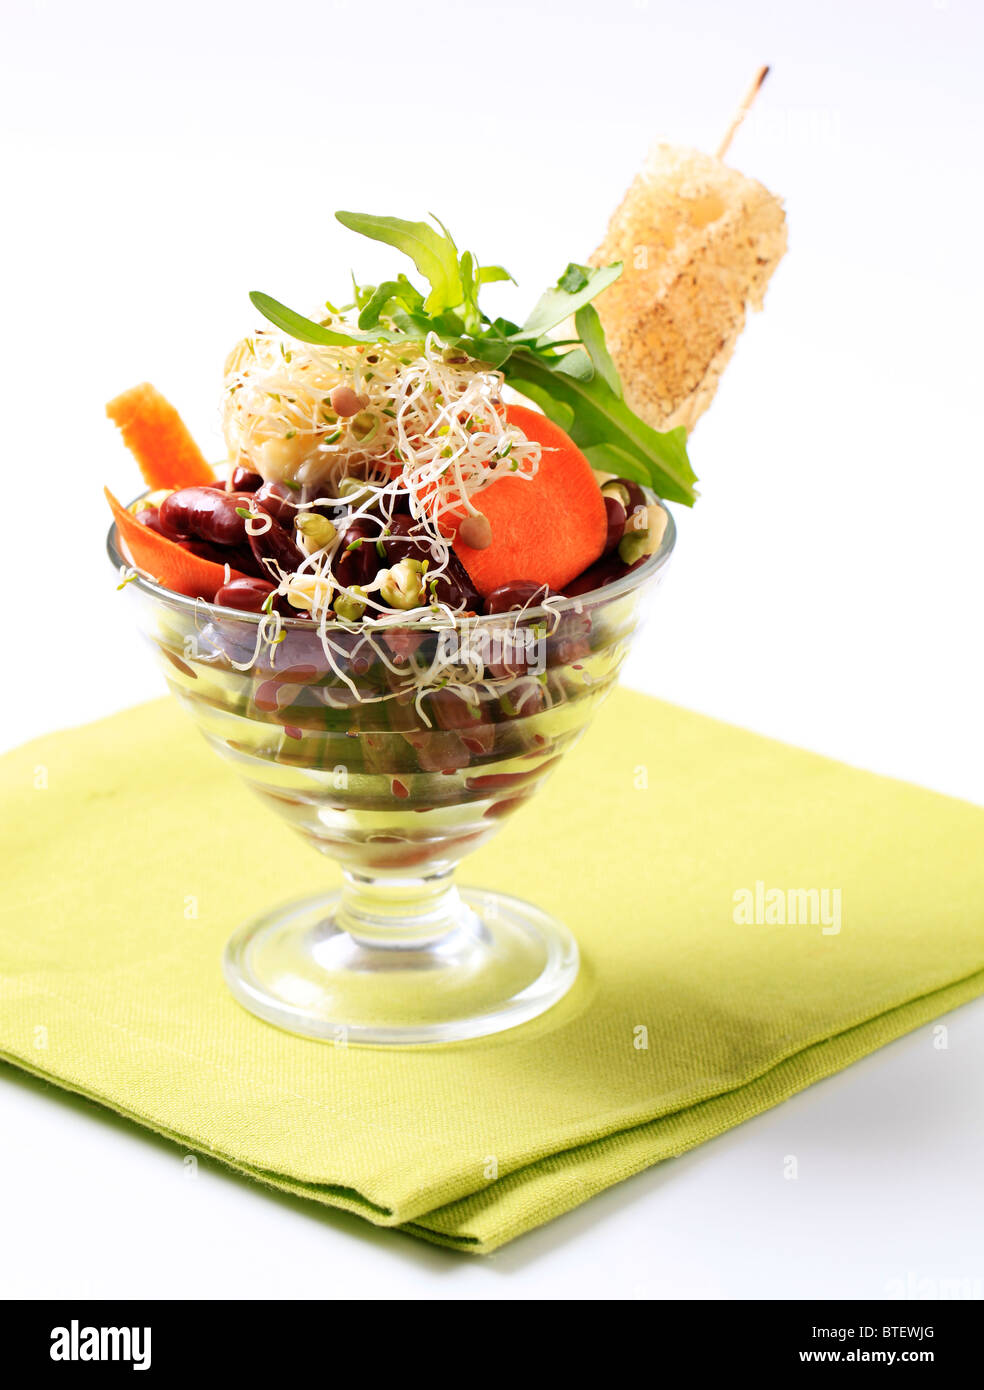 Red insalata di fagioli con lenticchia e nucleasi di germogli di soia Foto Stock